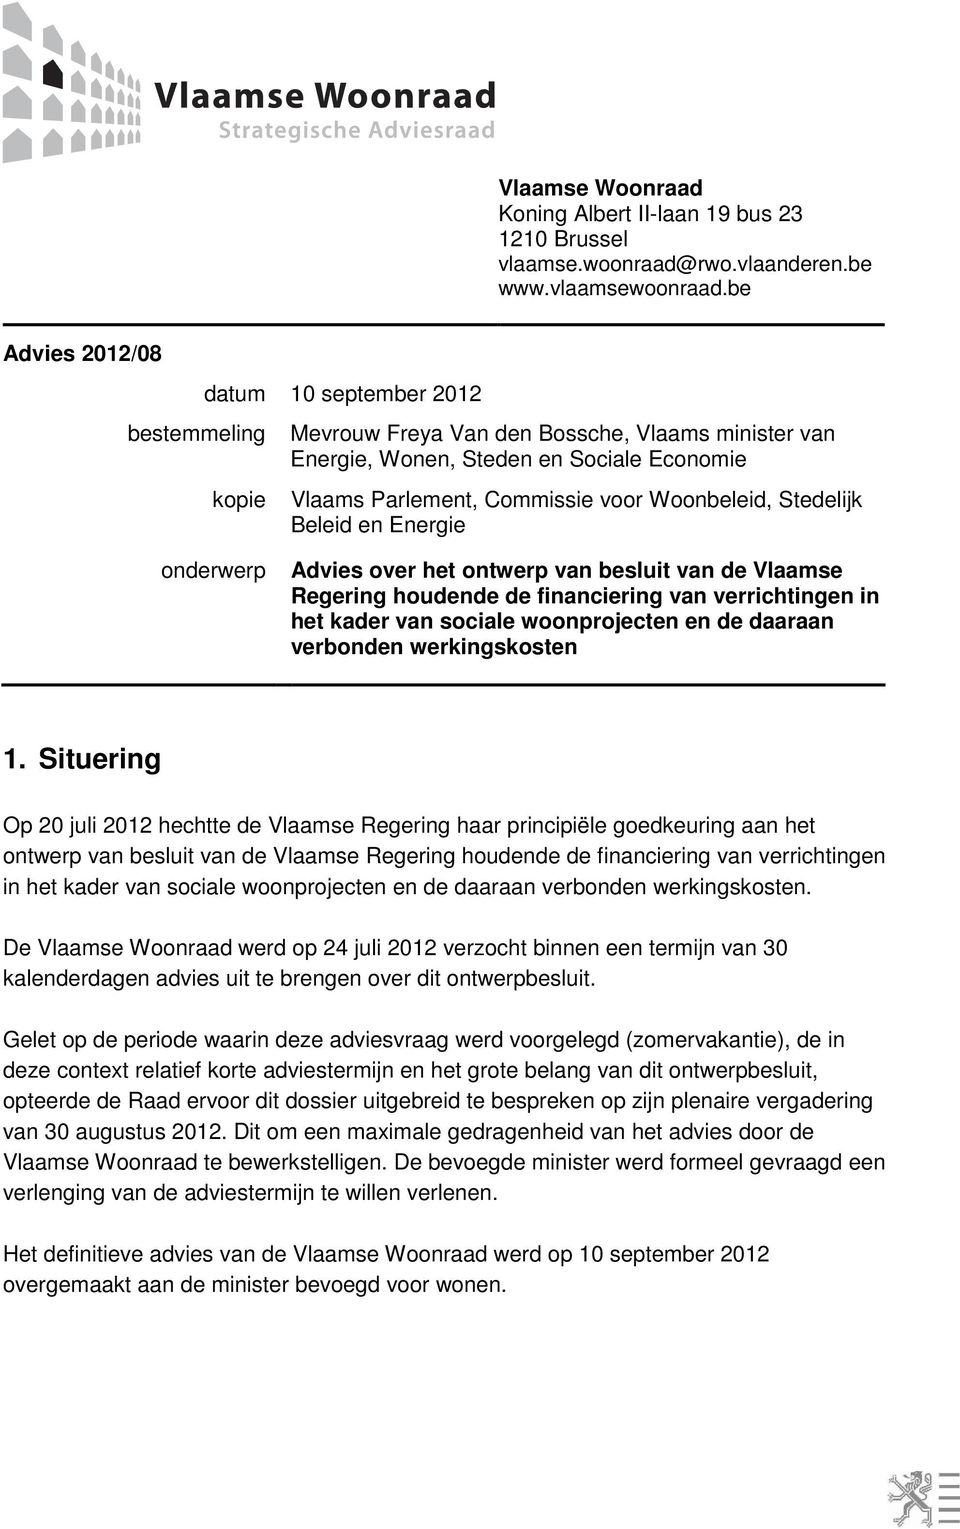 Stedelijk Beleid en Energie onderwerp Advies over het ontwerp van besluit van de Vlaamse Regering houdende de financiering van verrichtingen in het kader van sociale woonprojecten en de daaraan